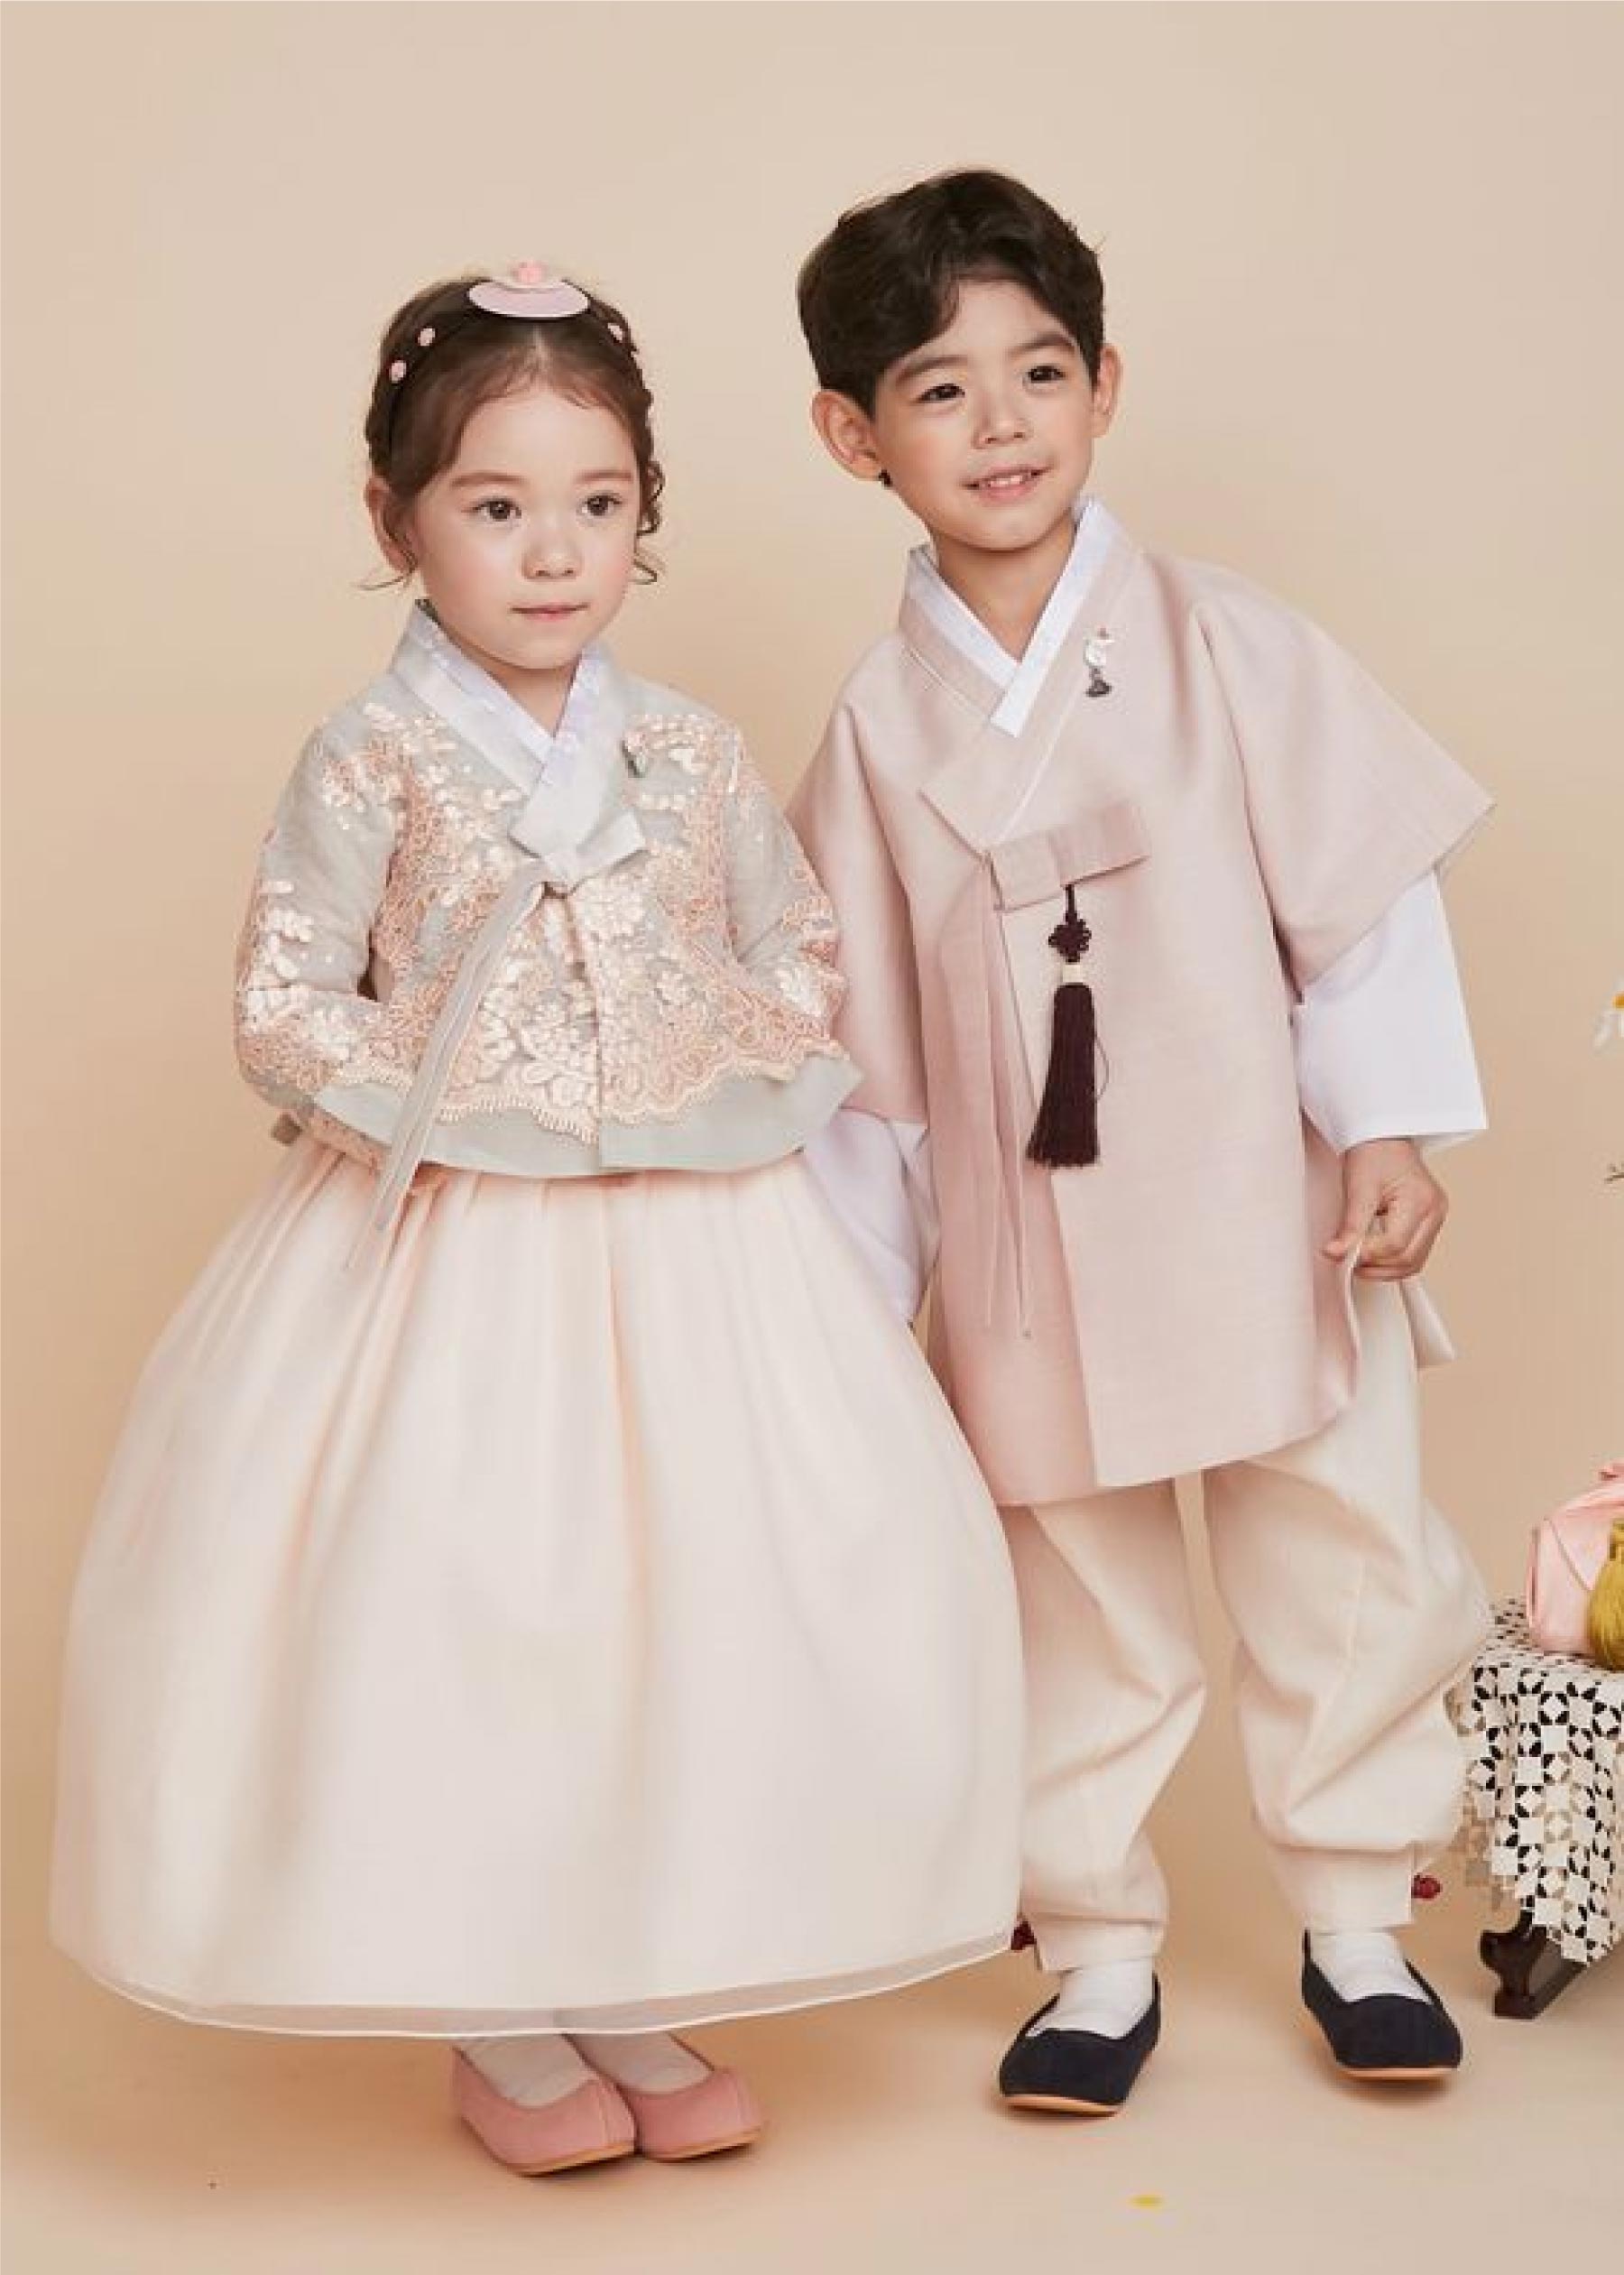 Đặc điểm của trang phục truyền thống Hanbok